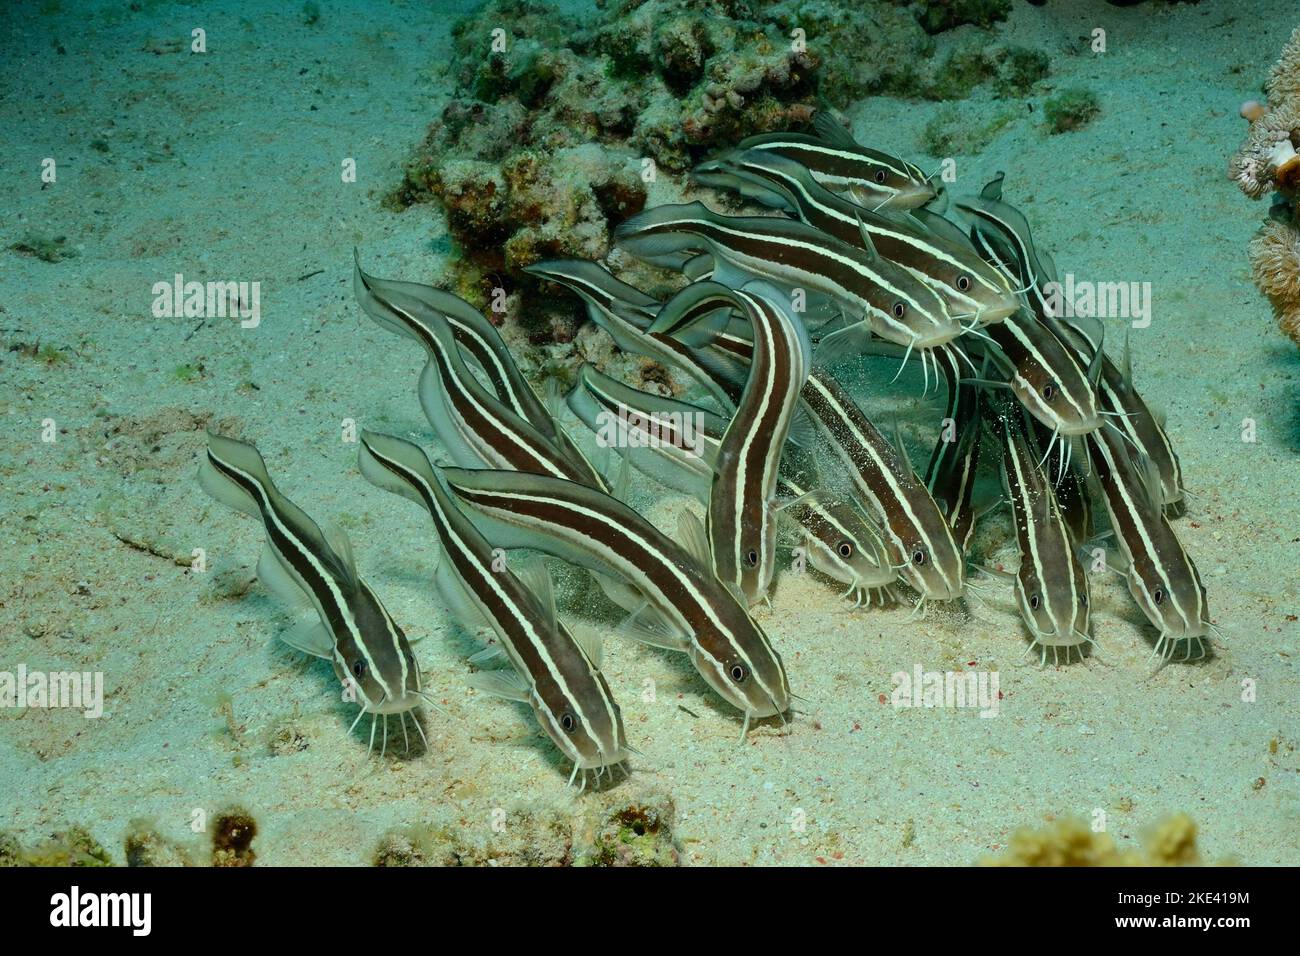 striped eel catfishes, Gestreifter Korallenwels, Plotosus lineatus, Schwarmverhalten, schooling behavior Stock Photo